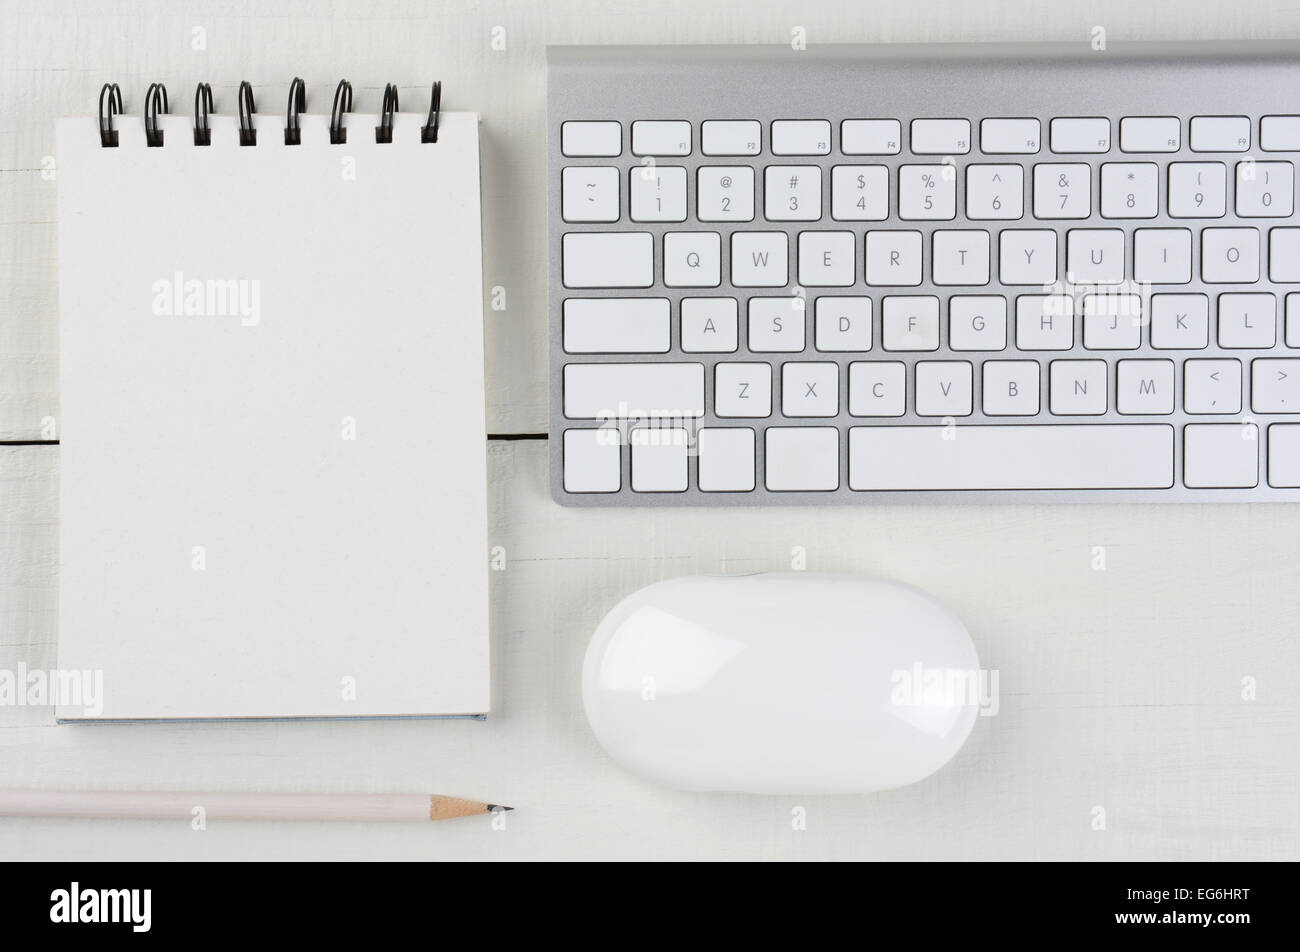 Image horizontale d'un bois blanc home office 24 avec un clavier d'ordinateur, vierge de notes, un crayon blanc, et de la souris. Banque D'Images